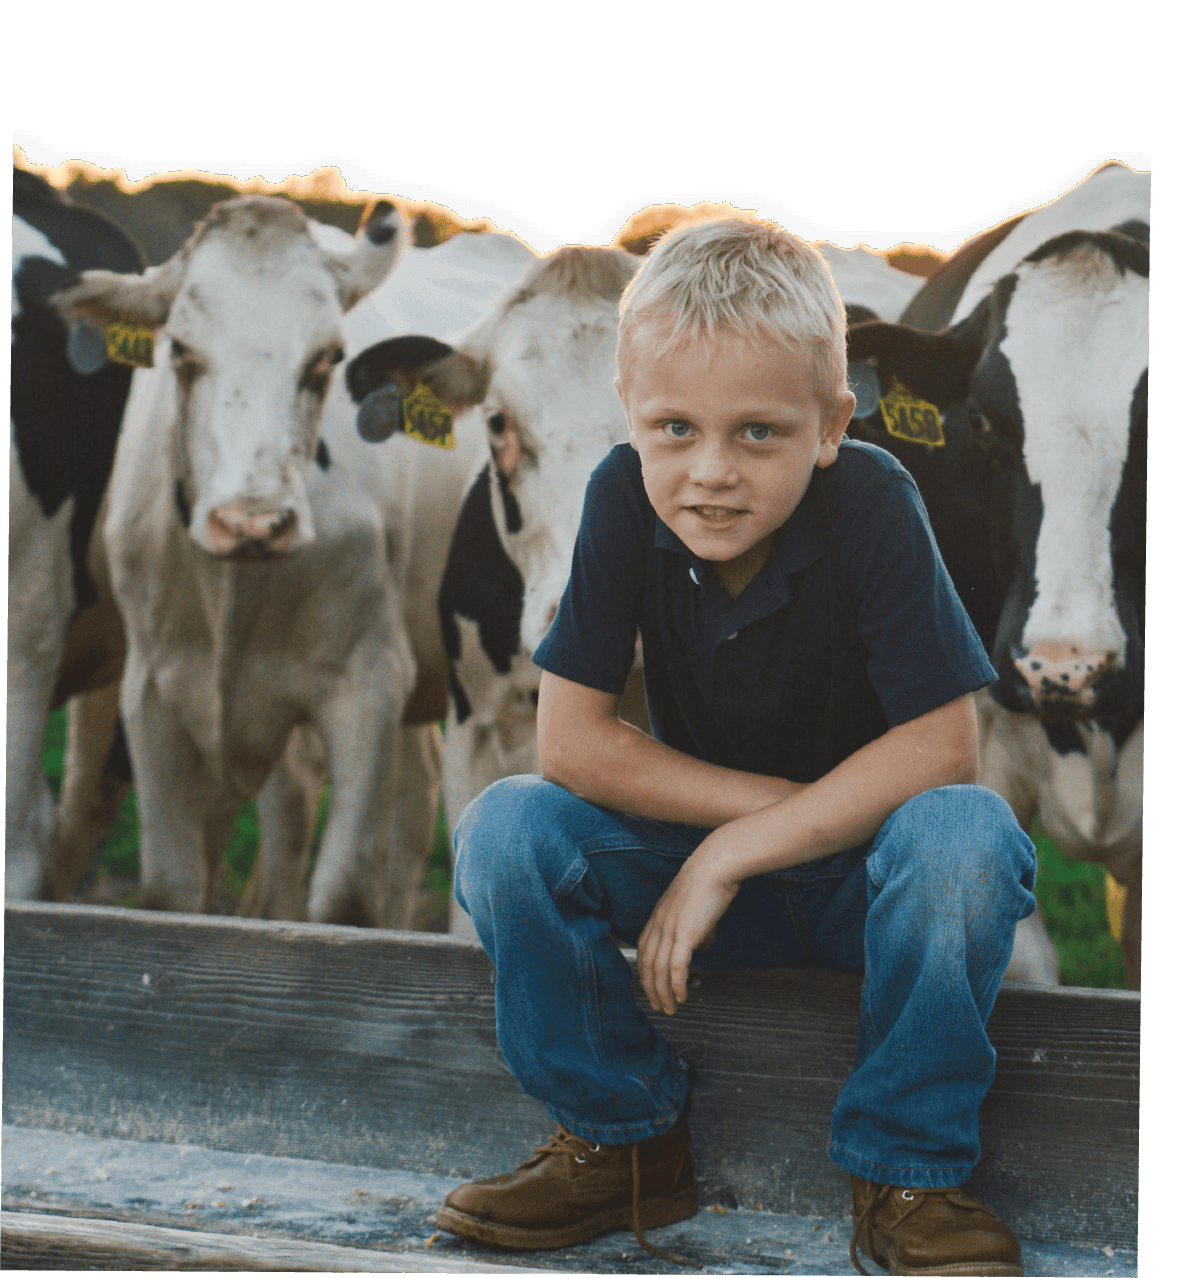 Kid Sitting in Farm Trough